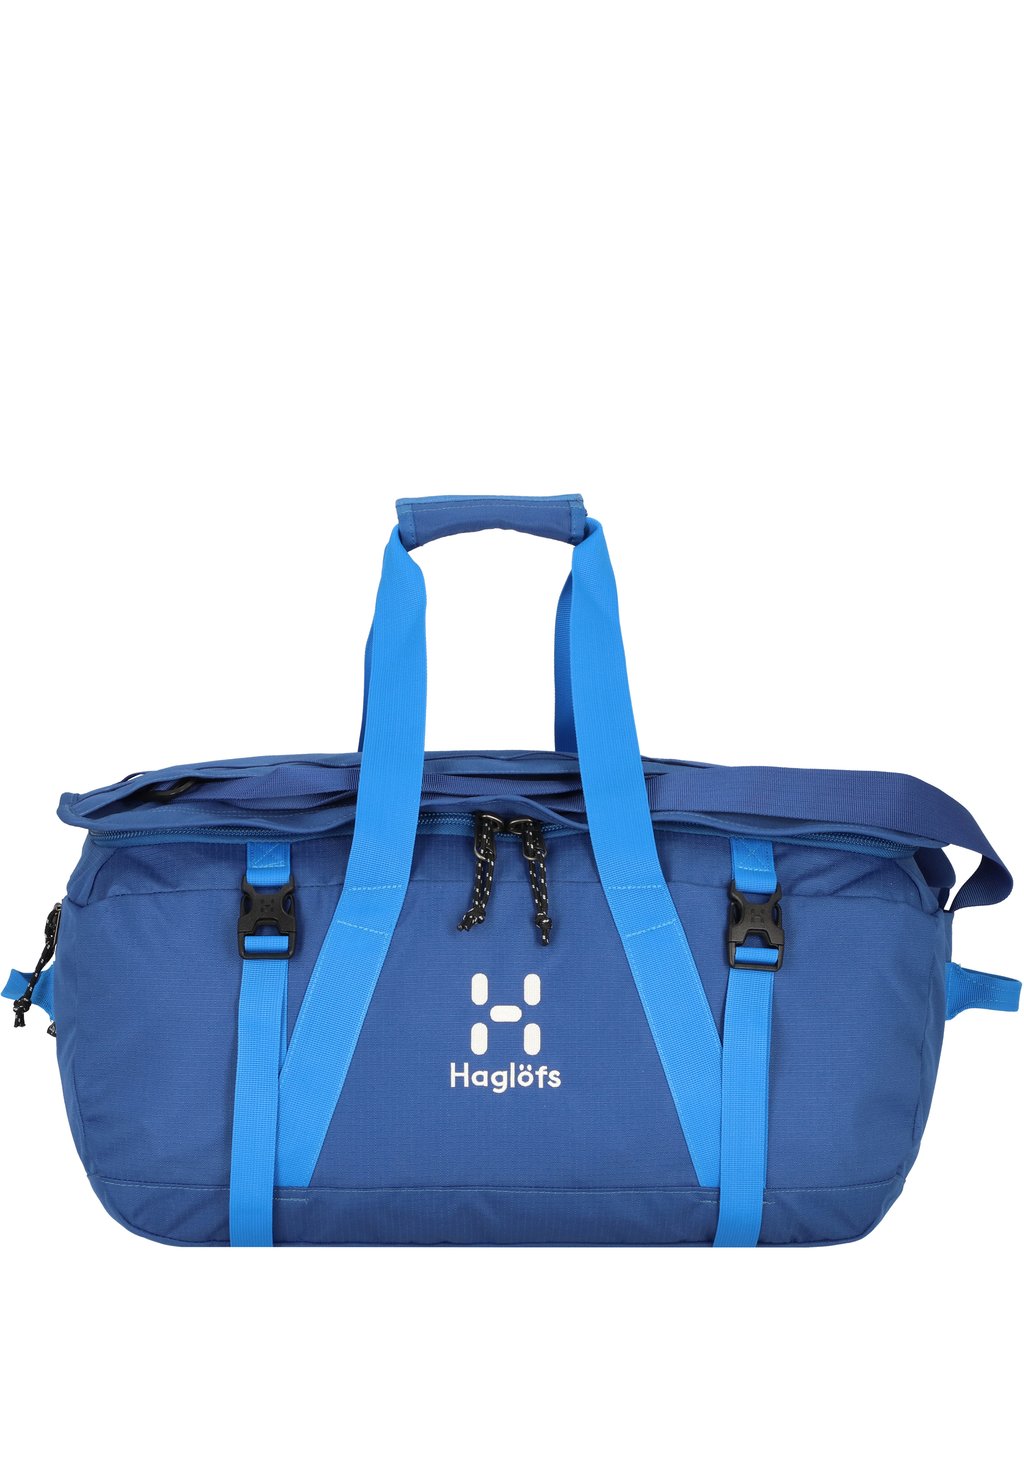 Дорожная сумка CARGO Haglöfs, цвет baltic blue/nordic blue